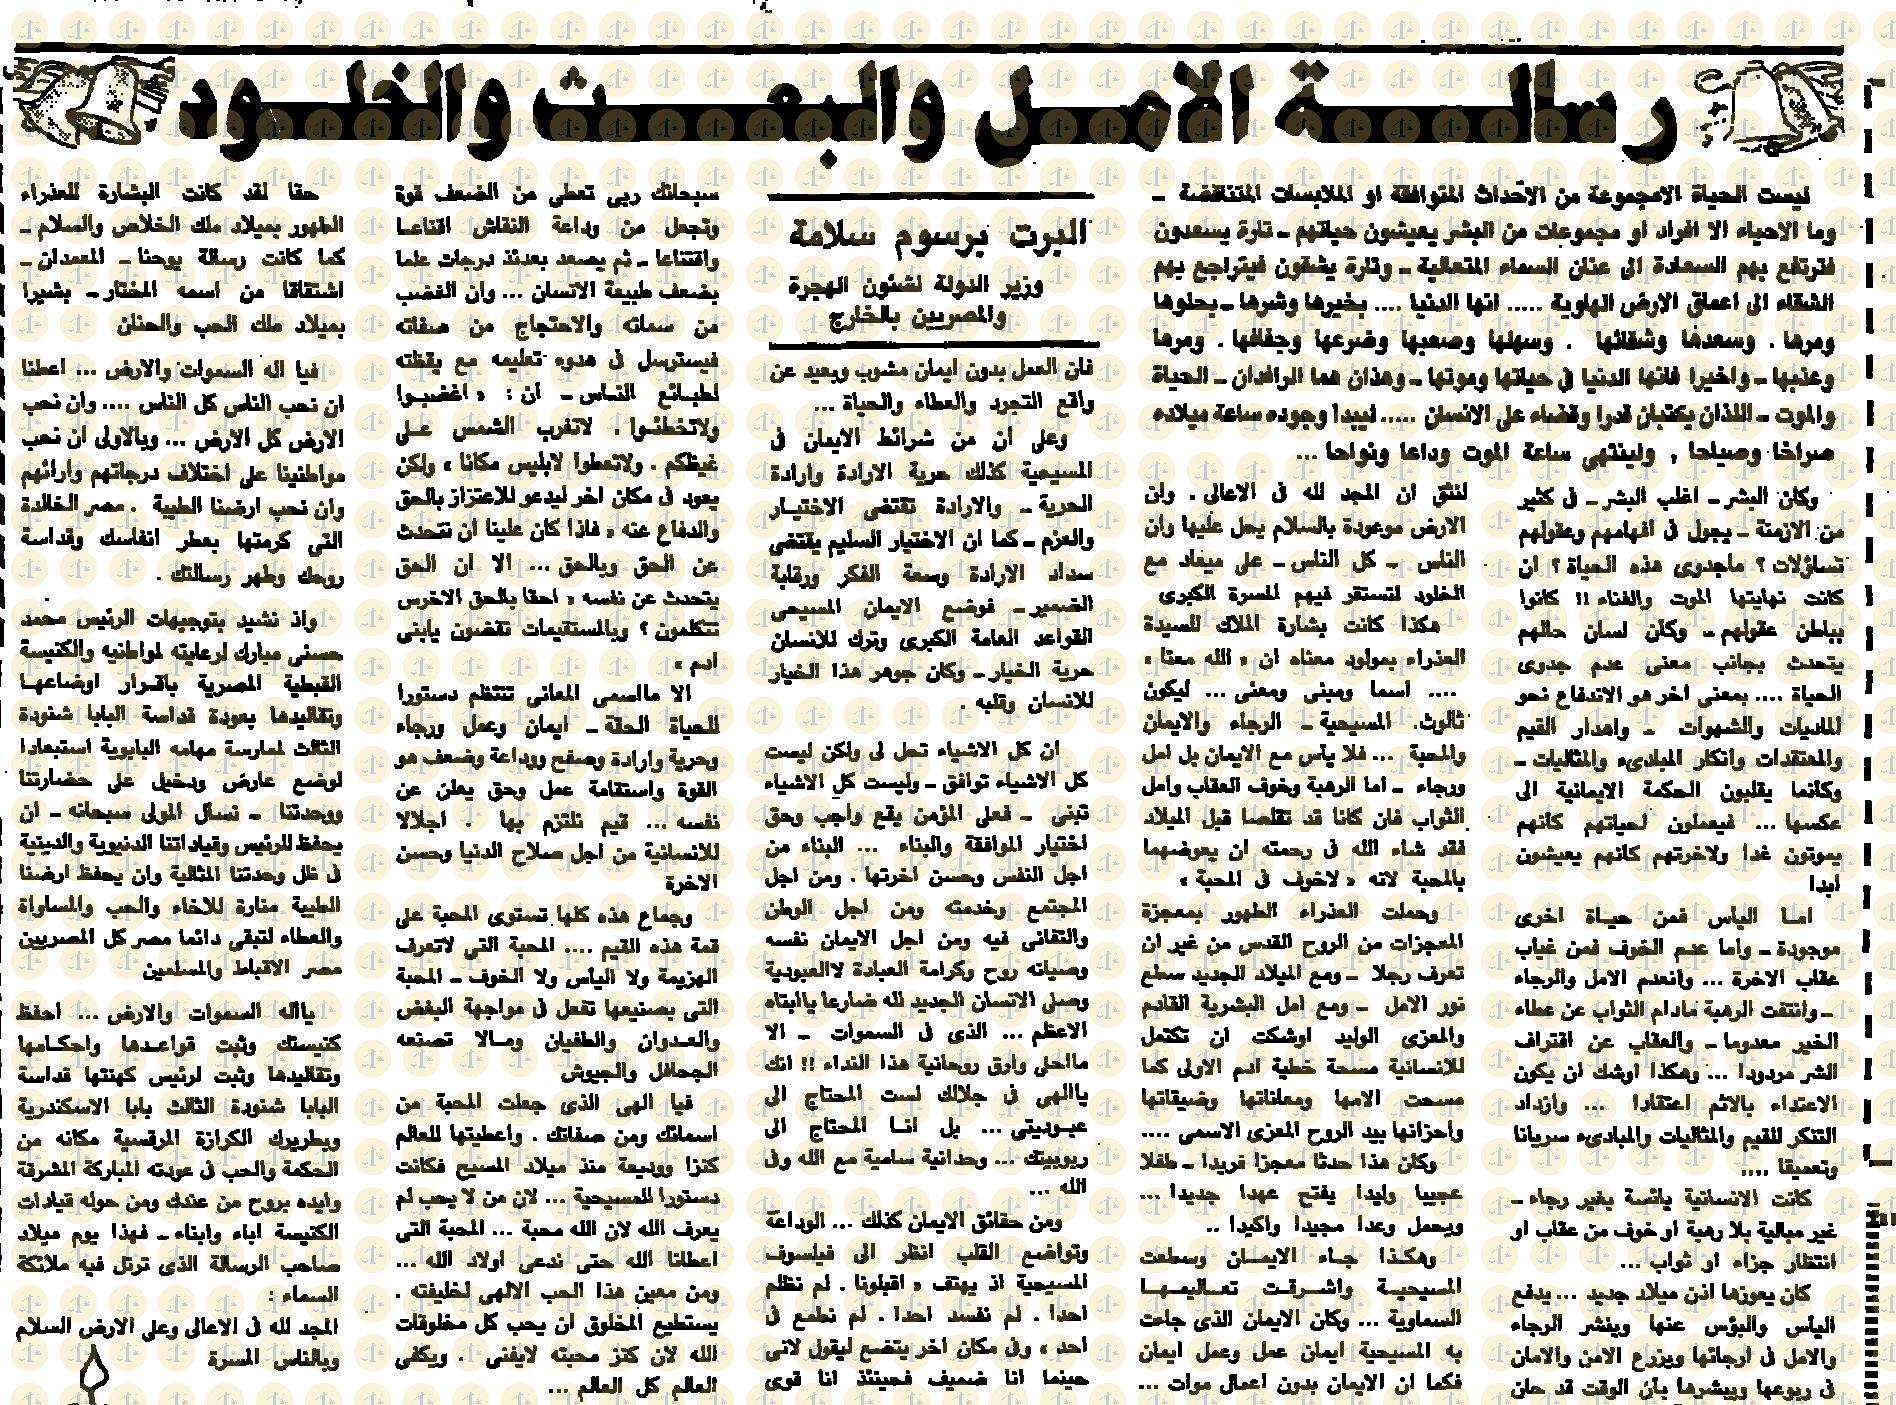 يوم 7 يناير 1985م، الأهرام، مقال ألبرت برسوم، ص7